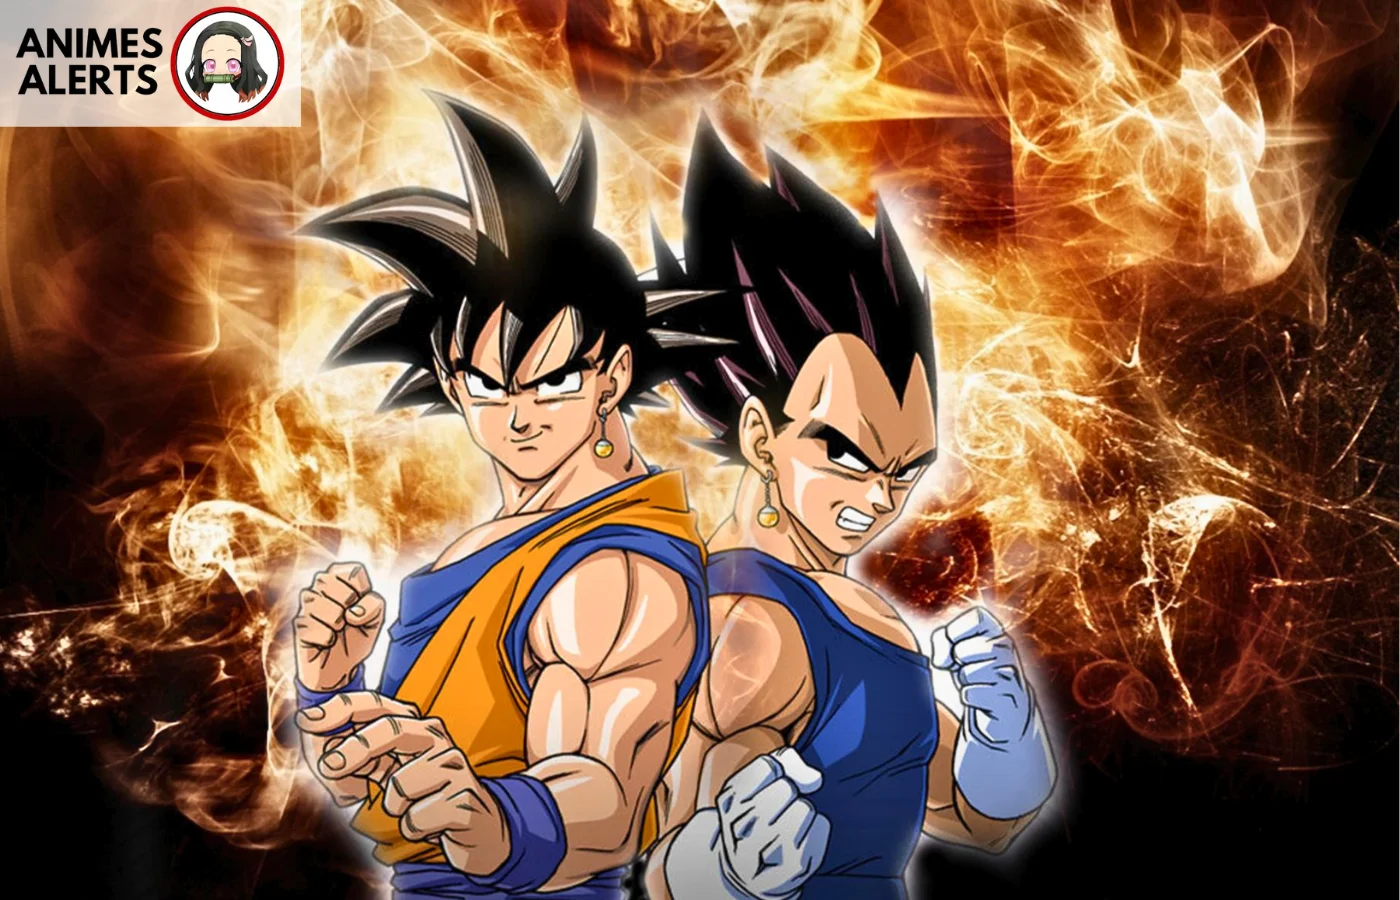 Goku and Vegeta(Dragon Ball Z)